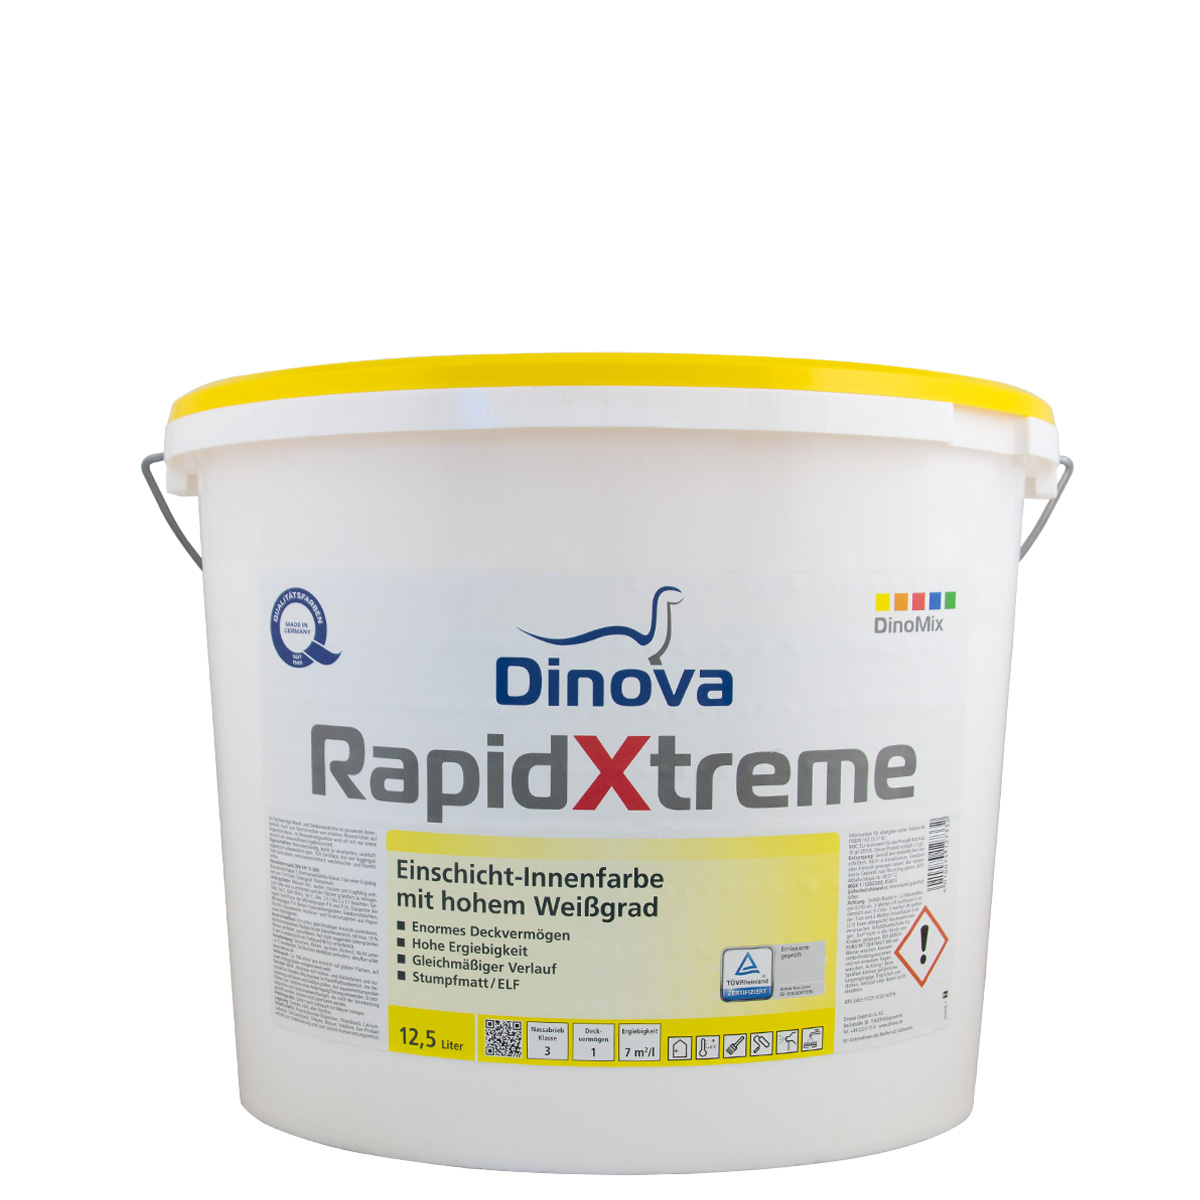 Dinova RapidXtreme 12,5L weiss, Einschicht-Innenfarbe, hohem Weißgrad